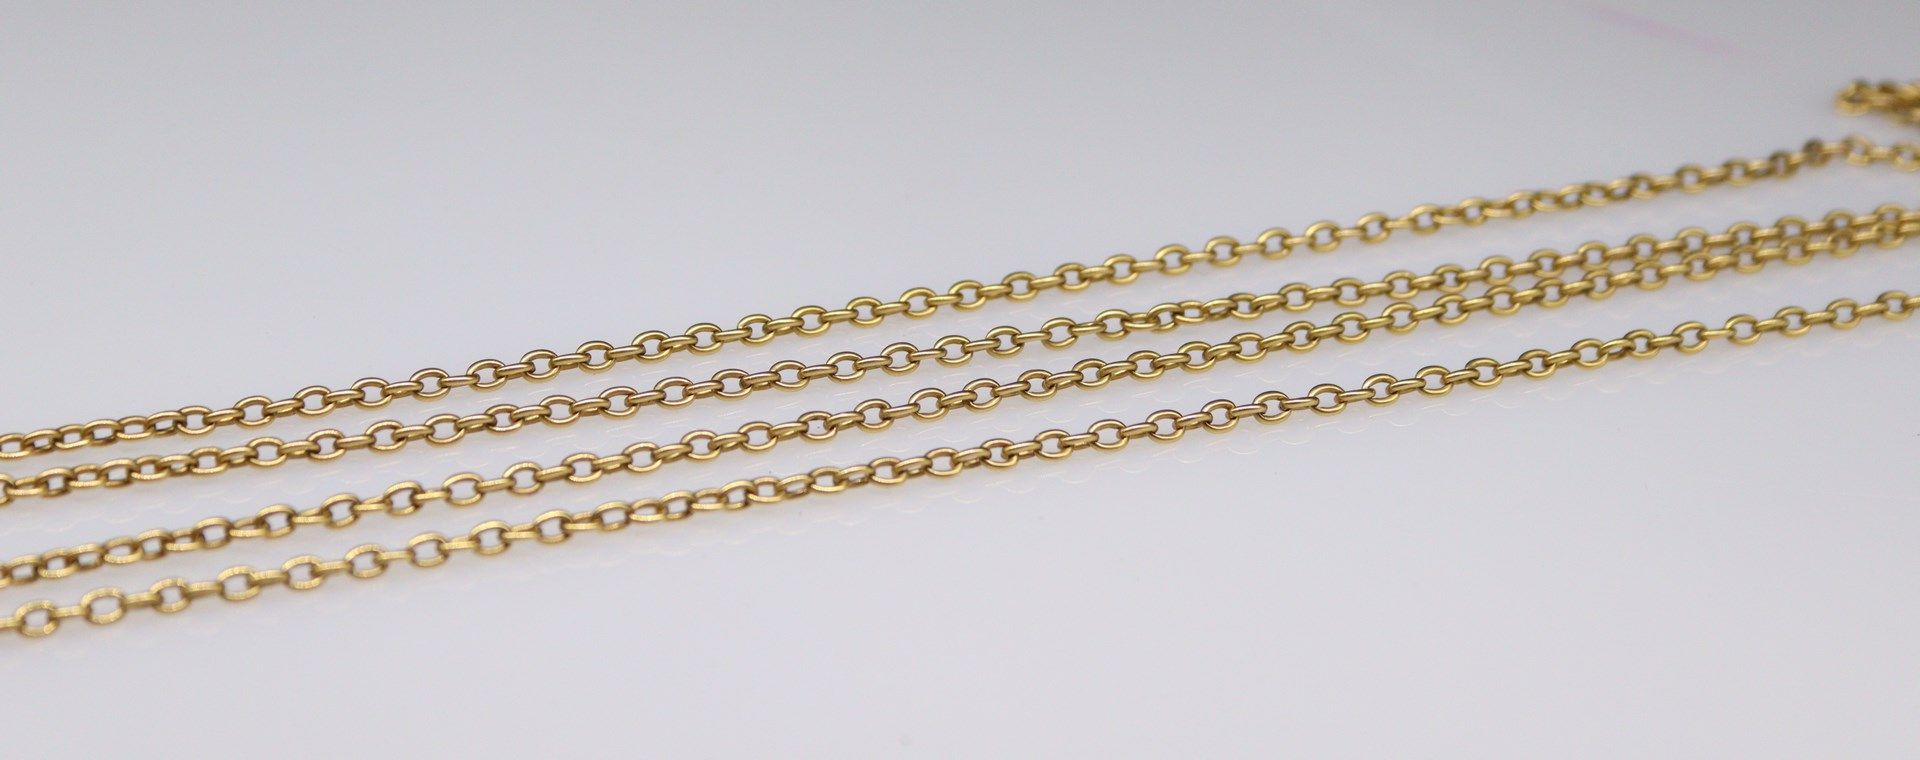 Null 链条为18K（750）黄金。
长度：约180厘米 - 重量：41.8克。